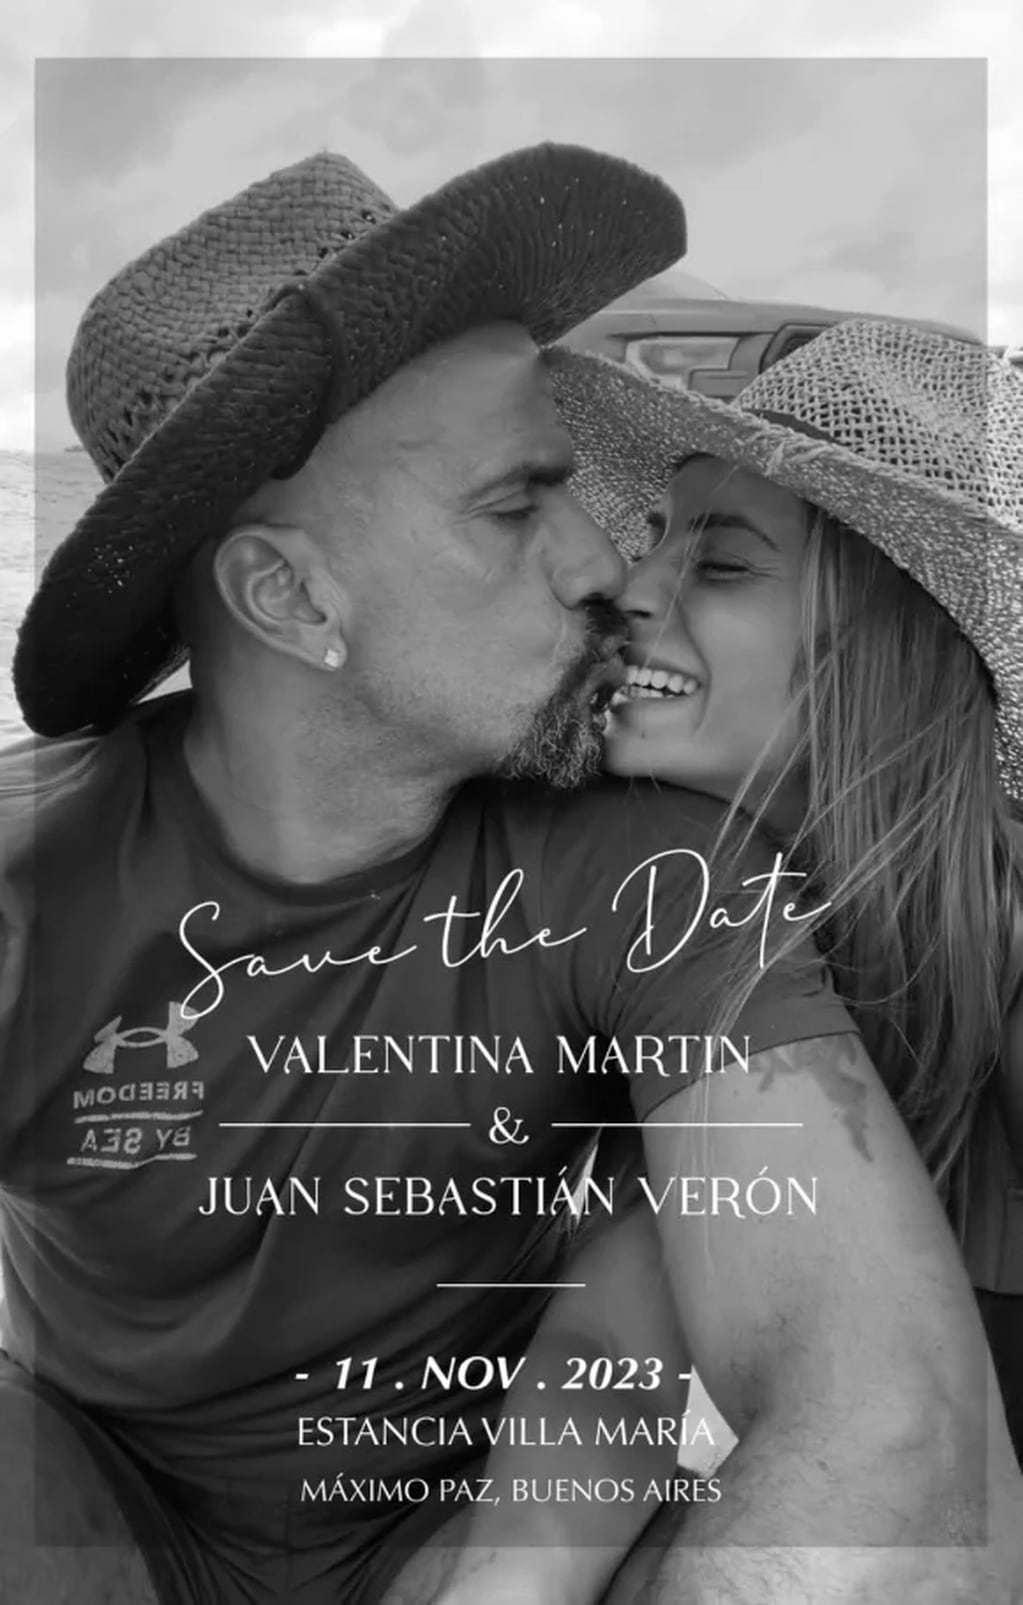 Verón y Valentina Martín se van a casar en noviembre